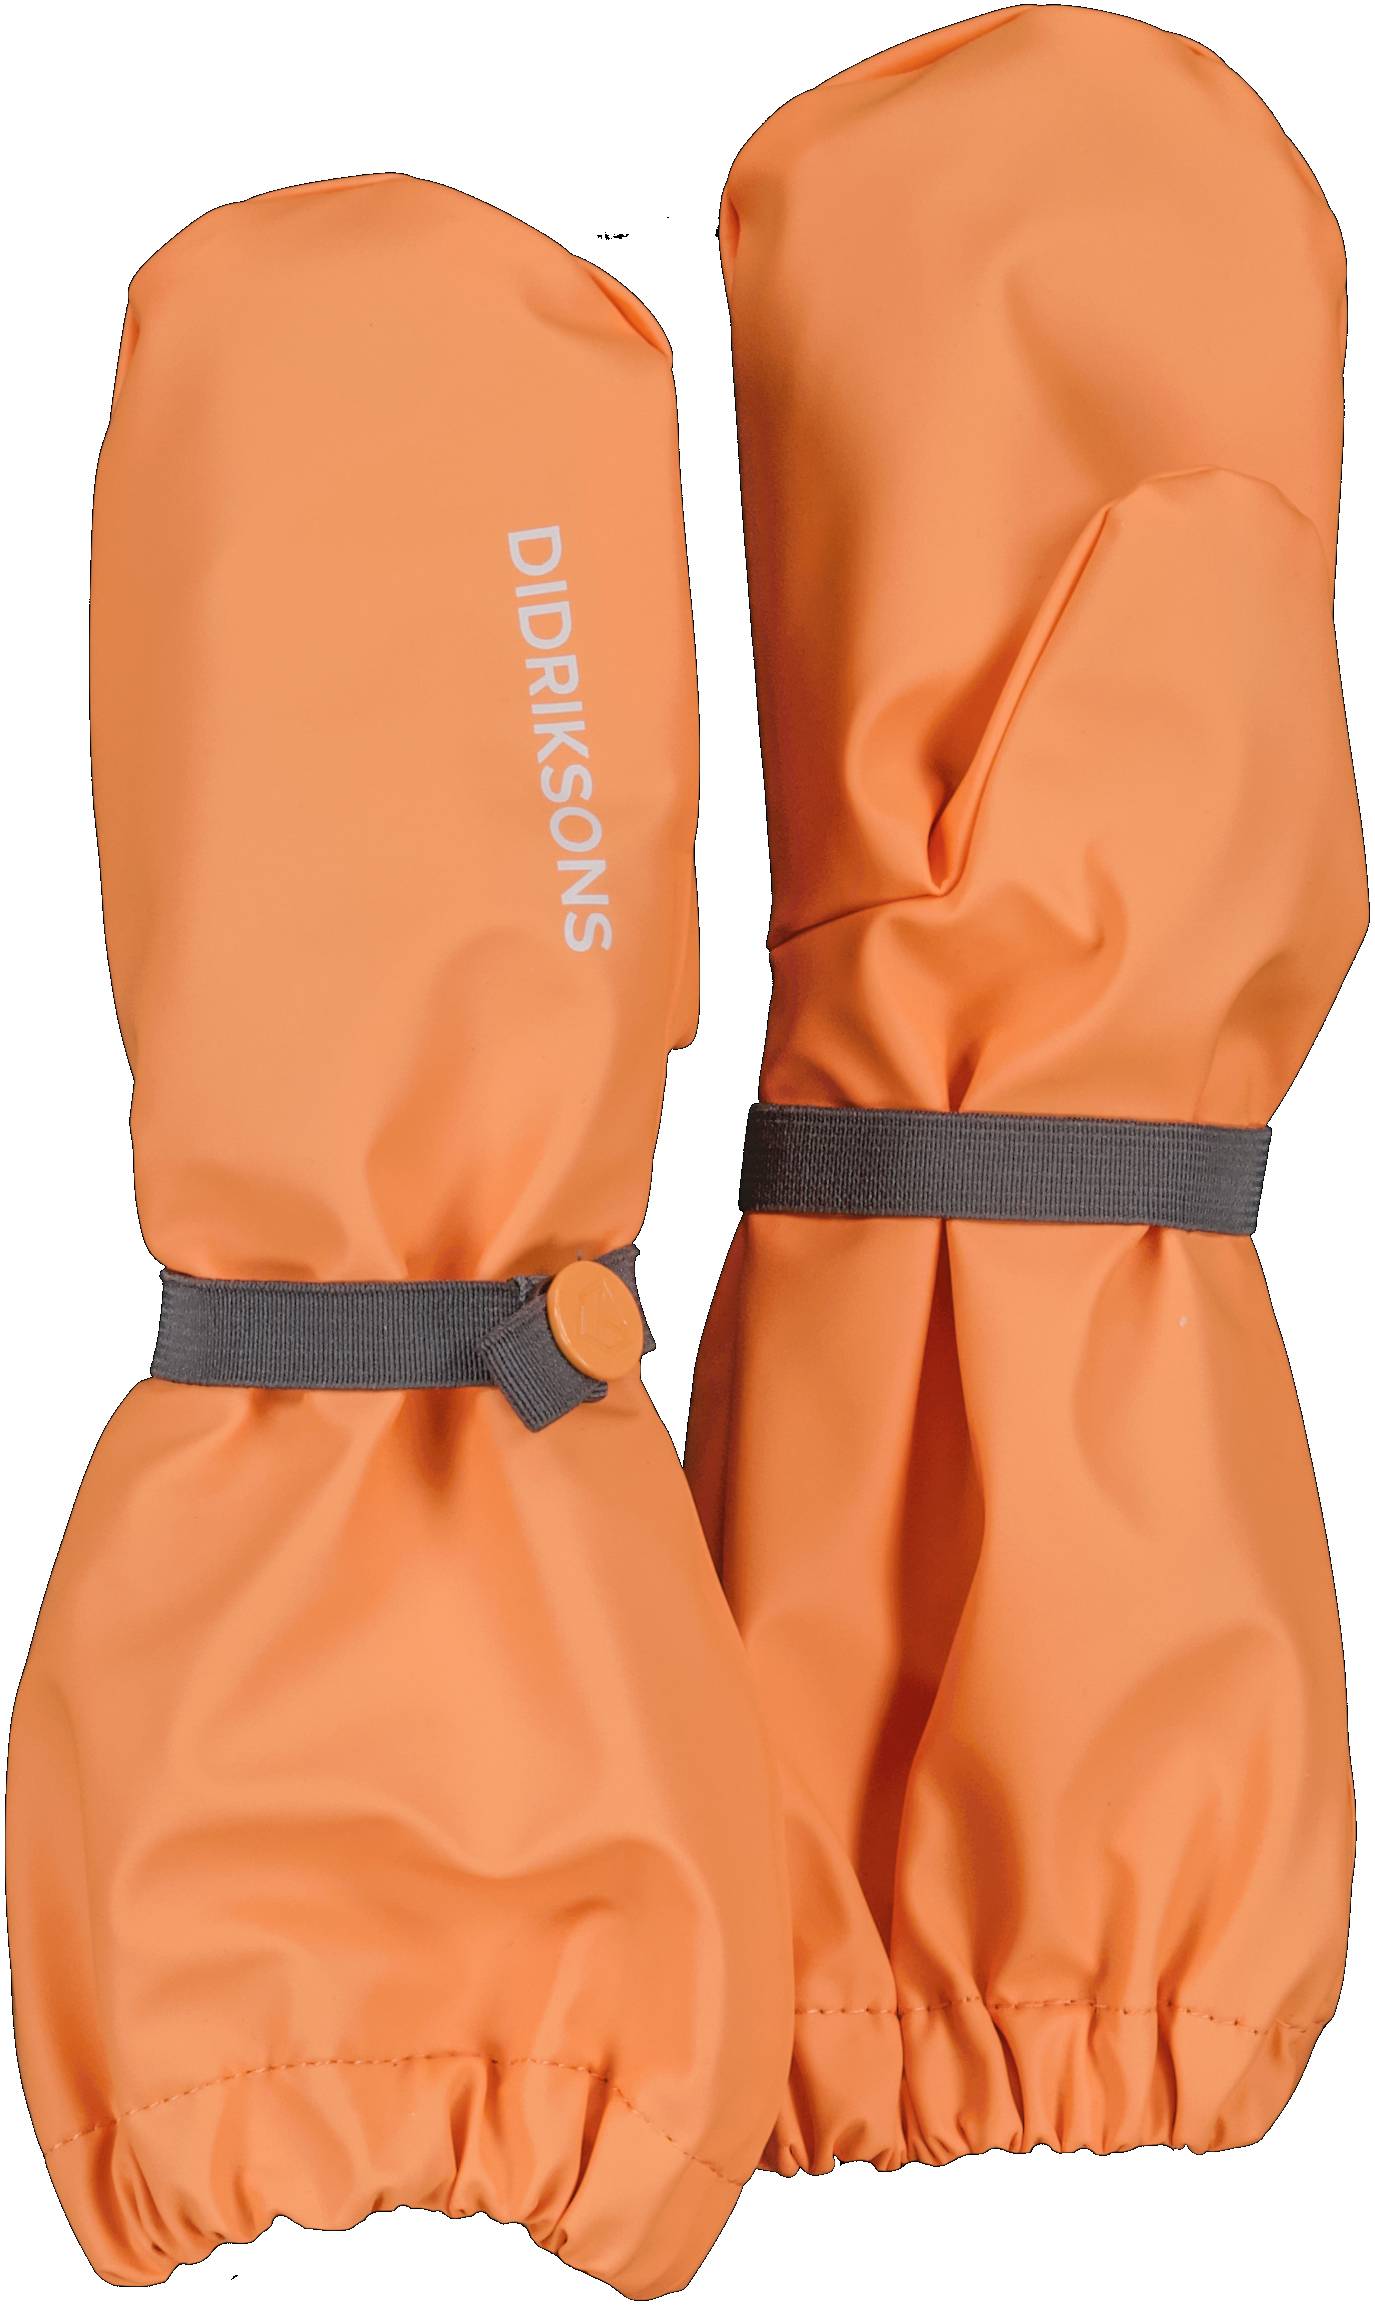 Dětské nepromokavé rukavice Didriksons Glove 5 Papaya Orange L04 Velikost: 0 - 2 roky